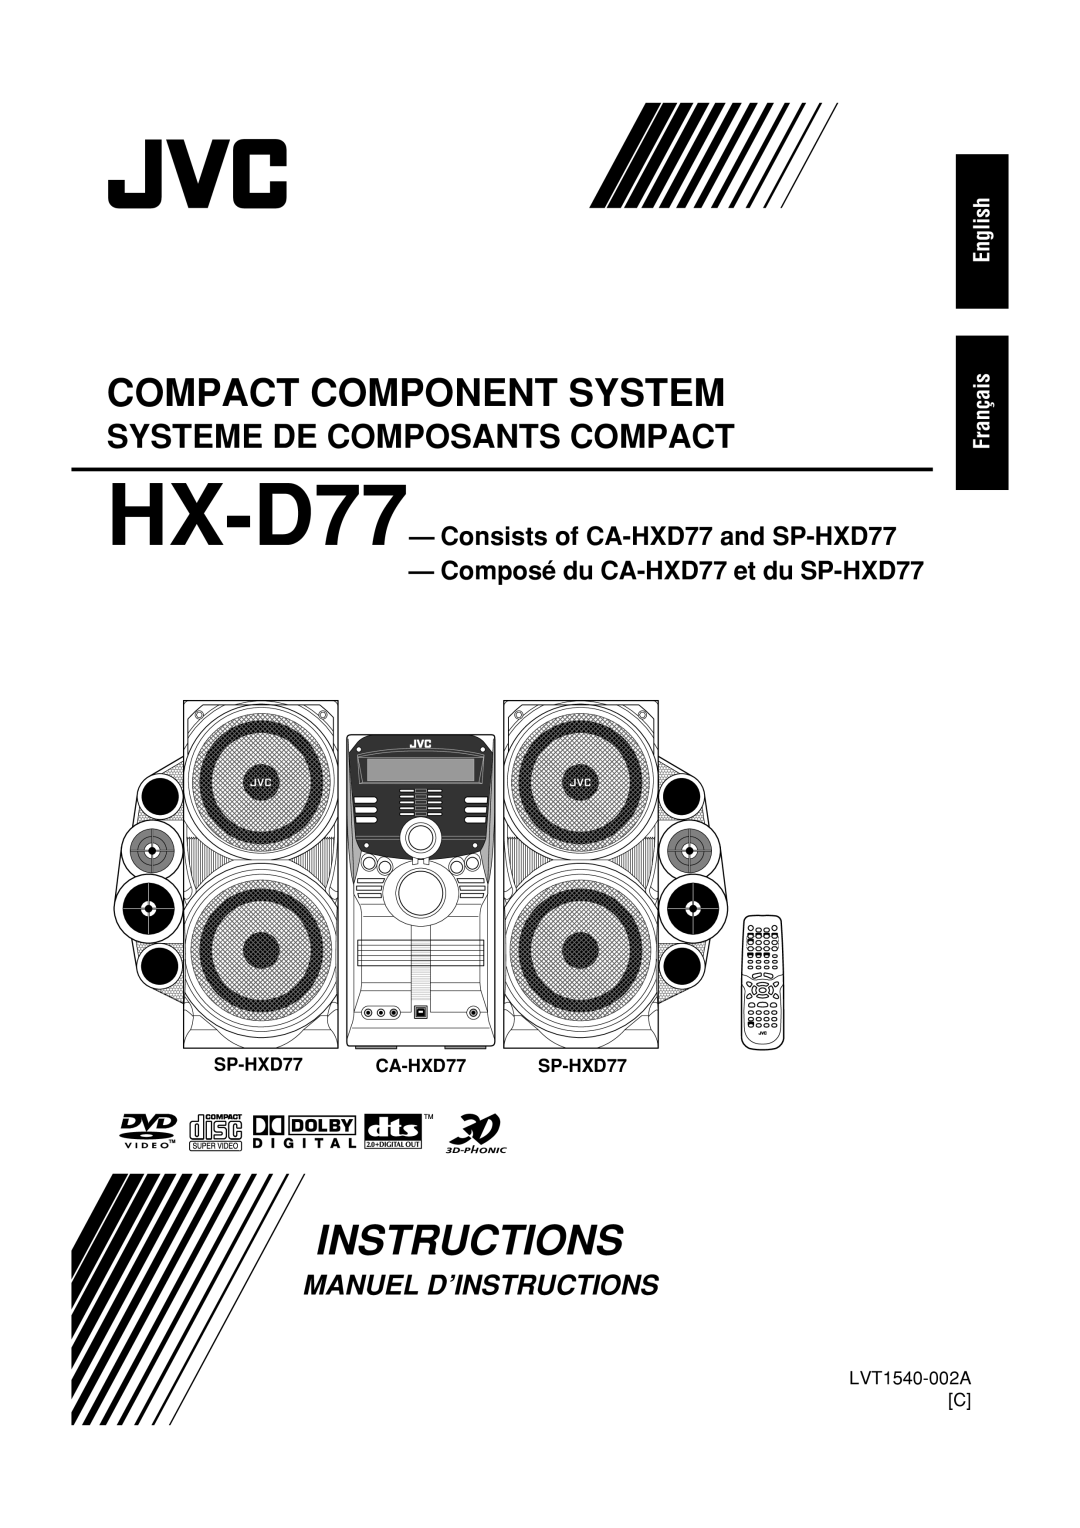 JVC manual HX-D77—Consists of CA-HXD77and SP-HXD77, Composé du CA-HXD77et du SP-HXD77, English Français, LVT1540-002AC 